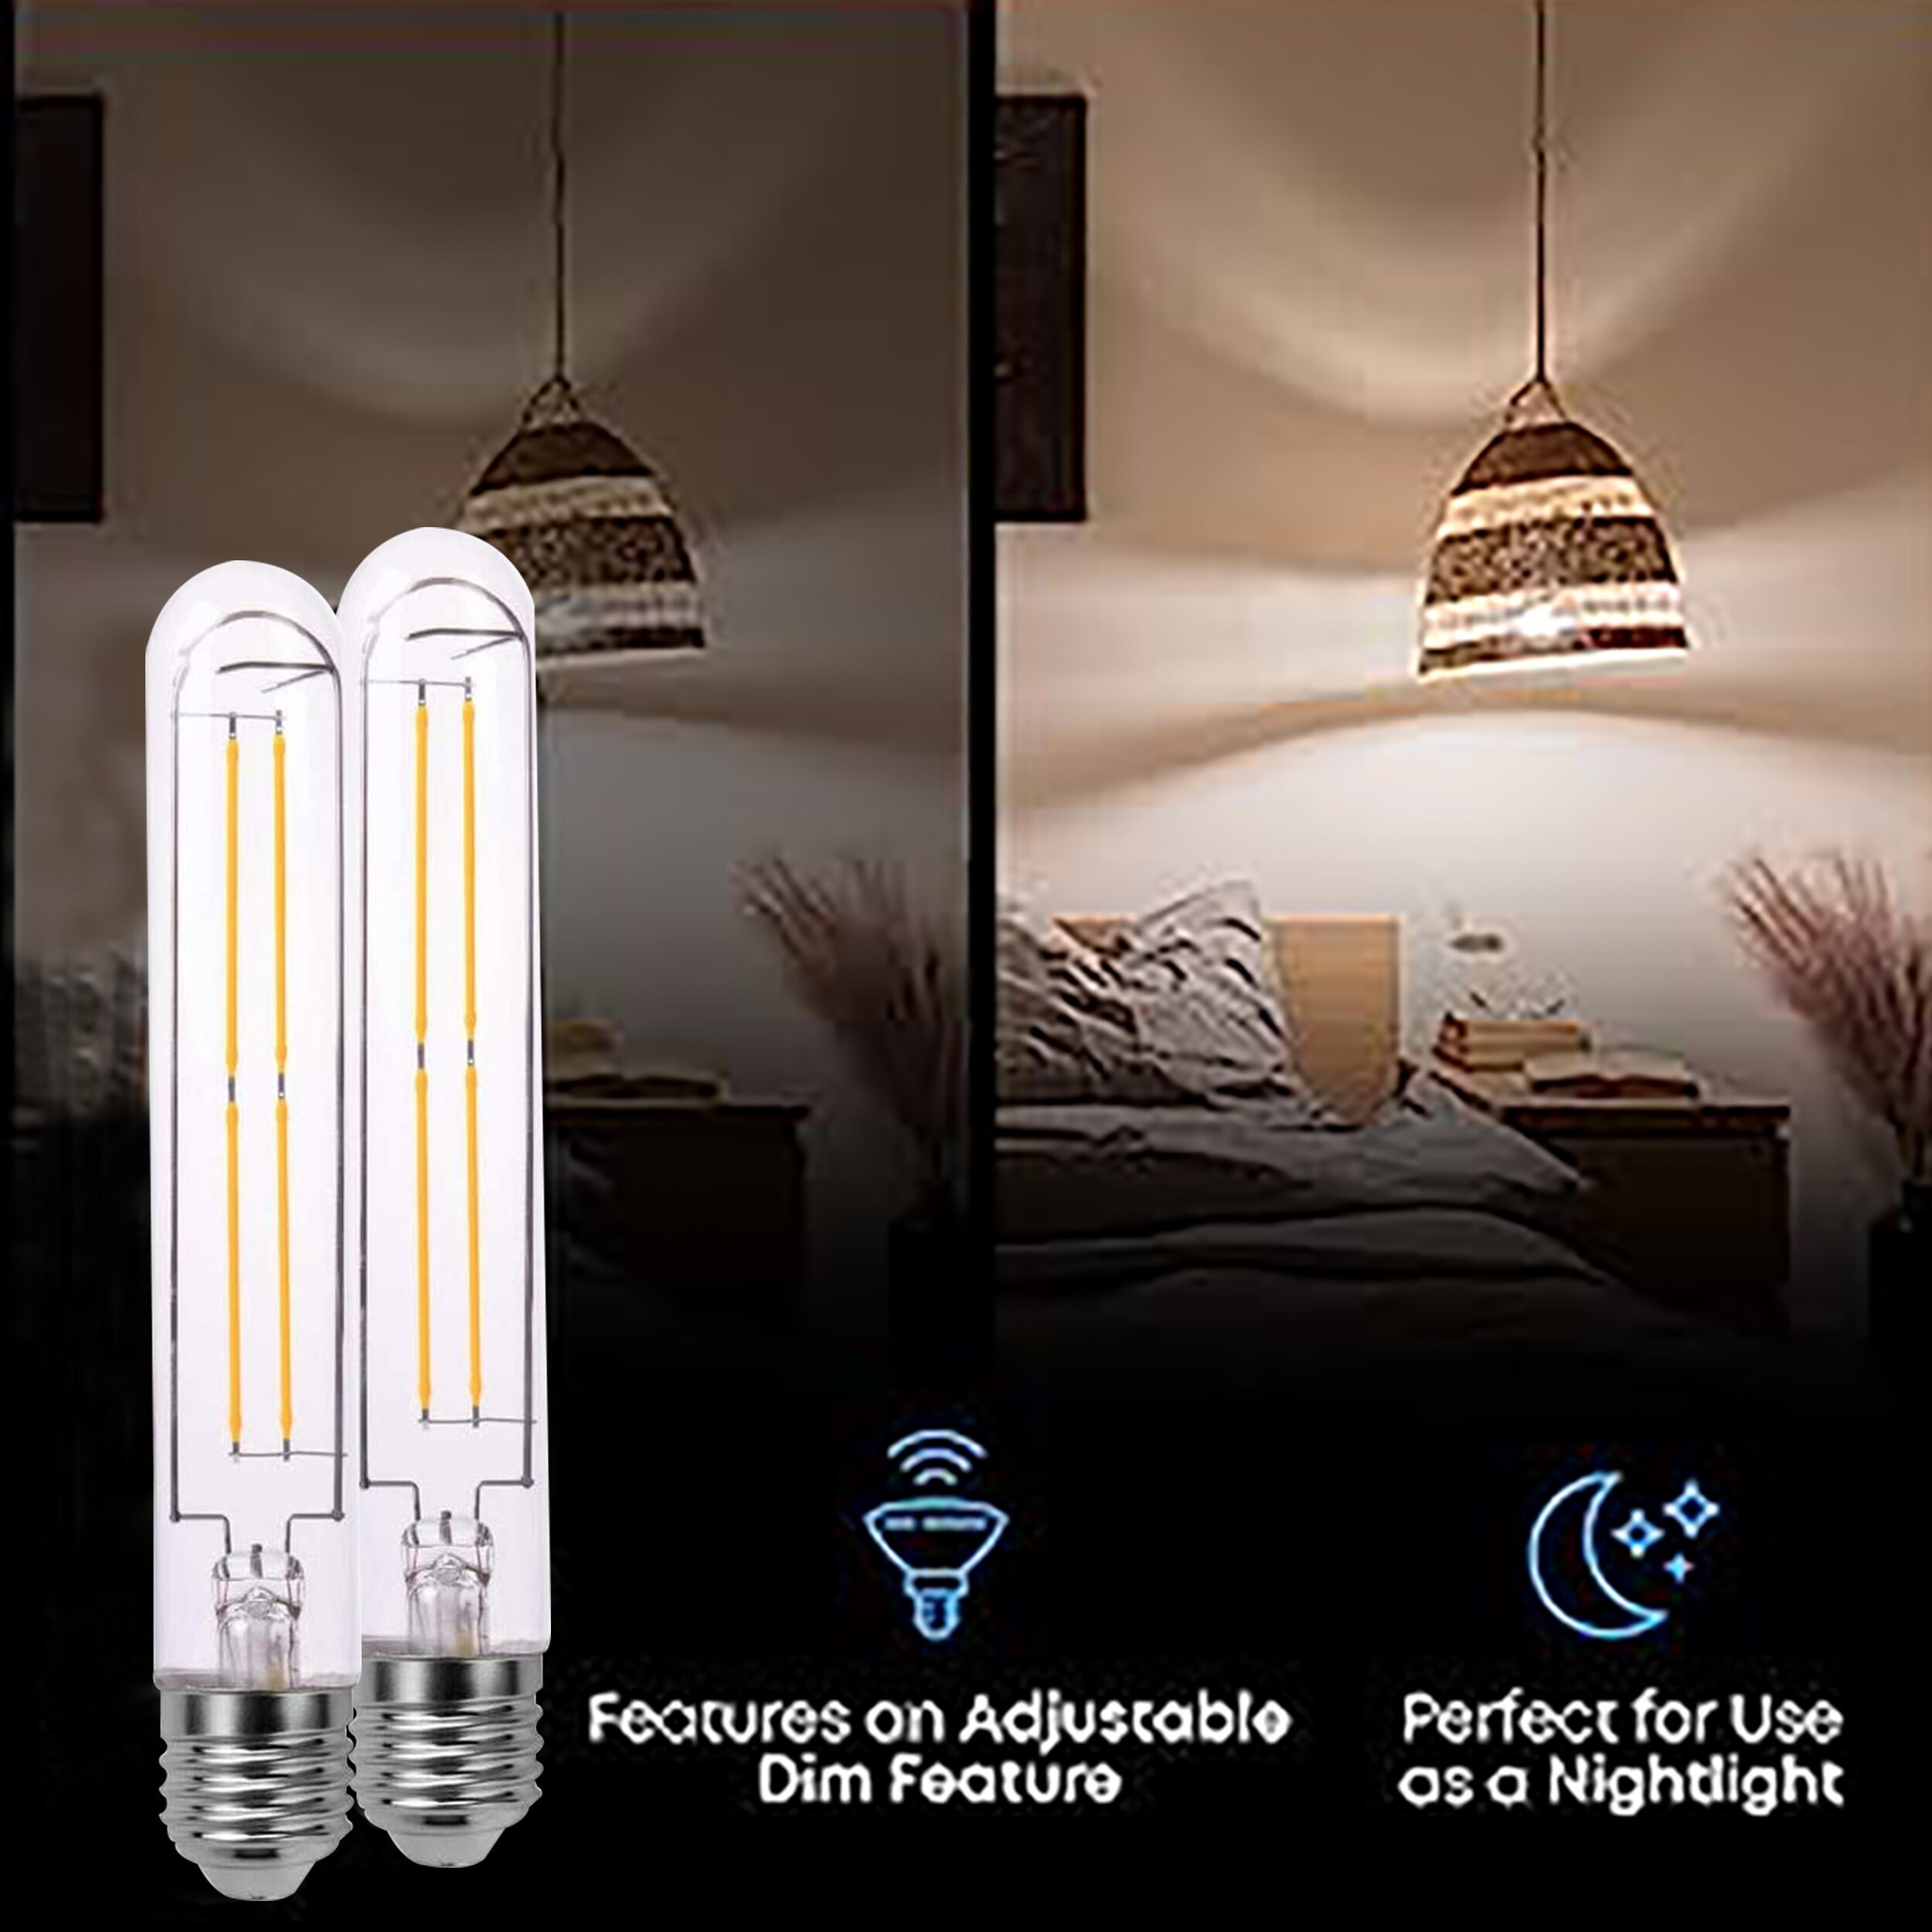 75-Watt Equivalent T10 Household Indoor LED Light Bulb in Warm White  (4-Pack)